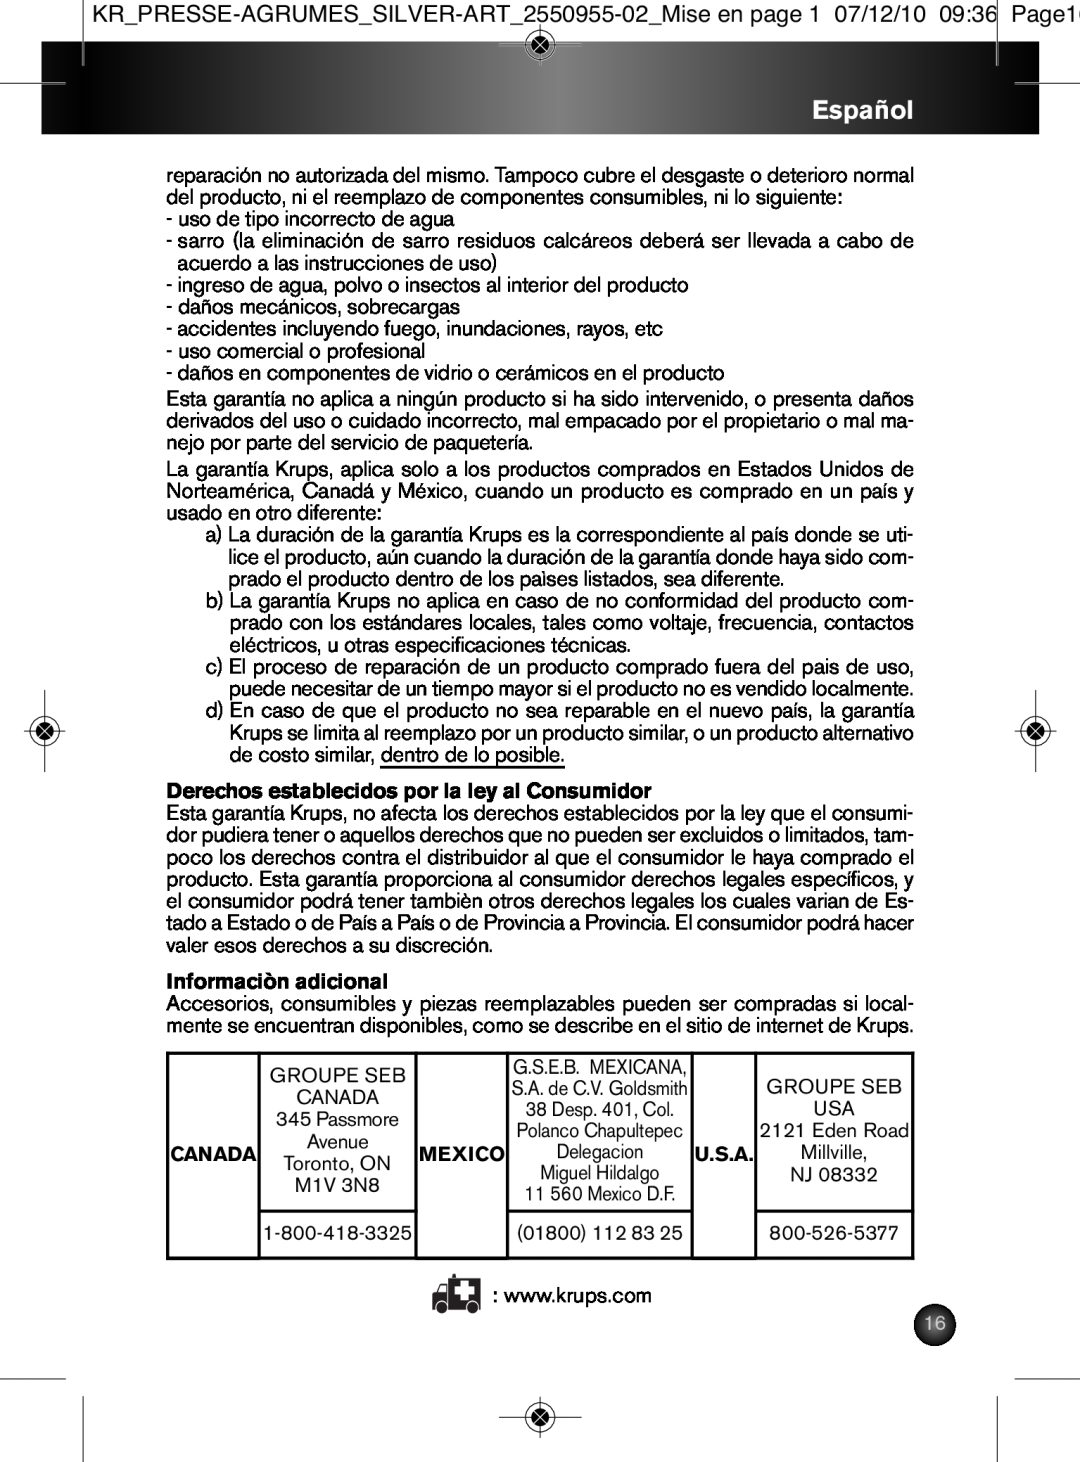 Krups 2550955-02 manual Español, Derechos establecidos por la ley al Consumidor, Informaciòn adicional 